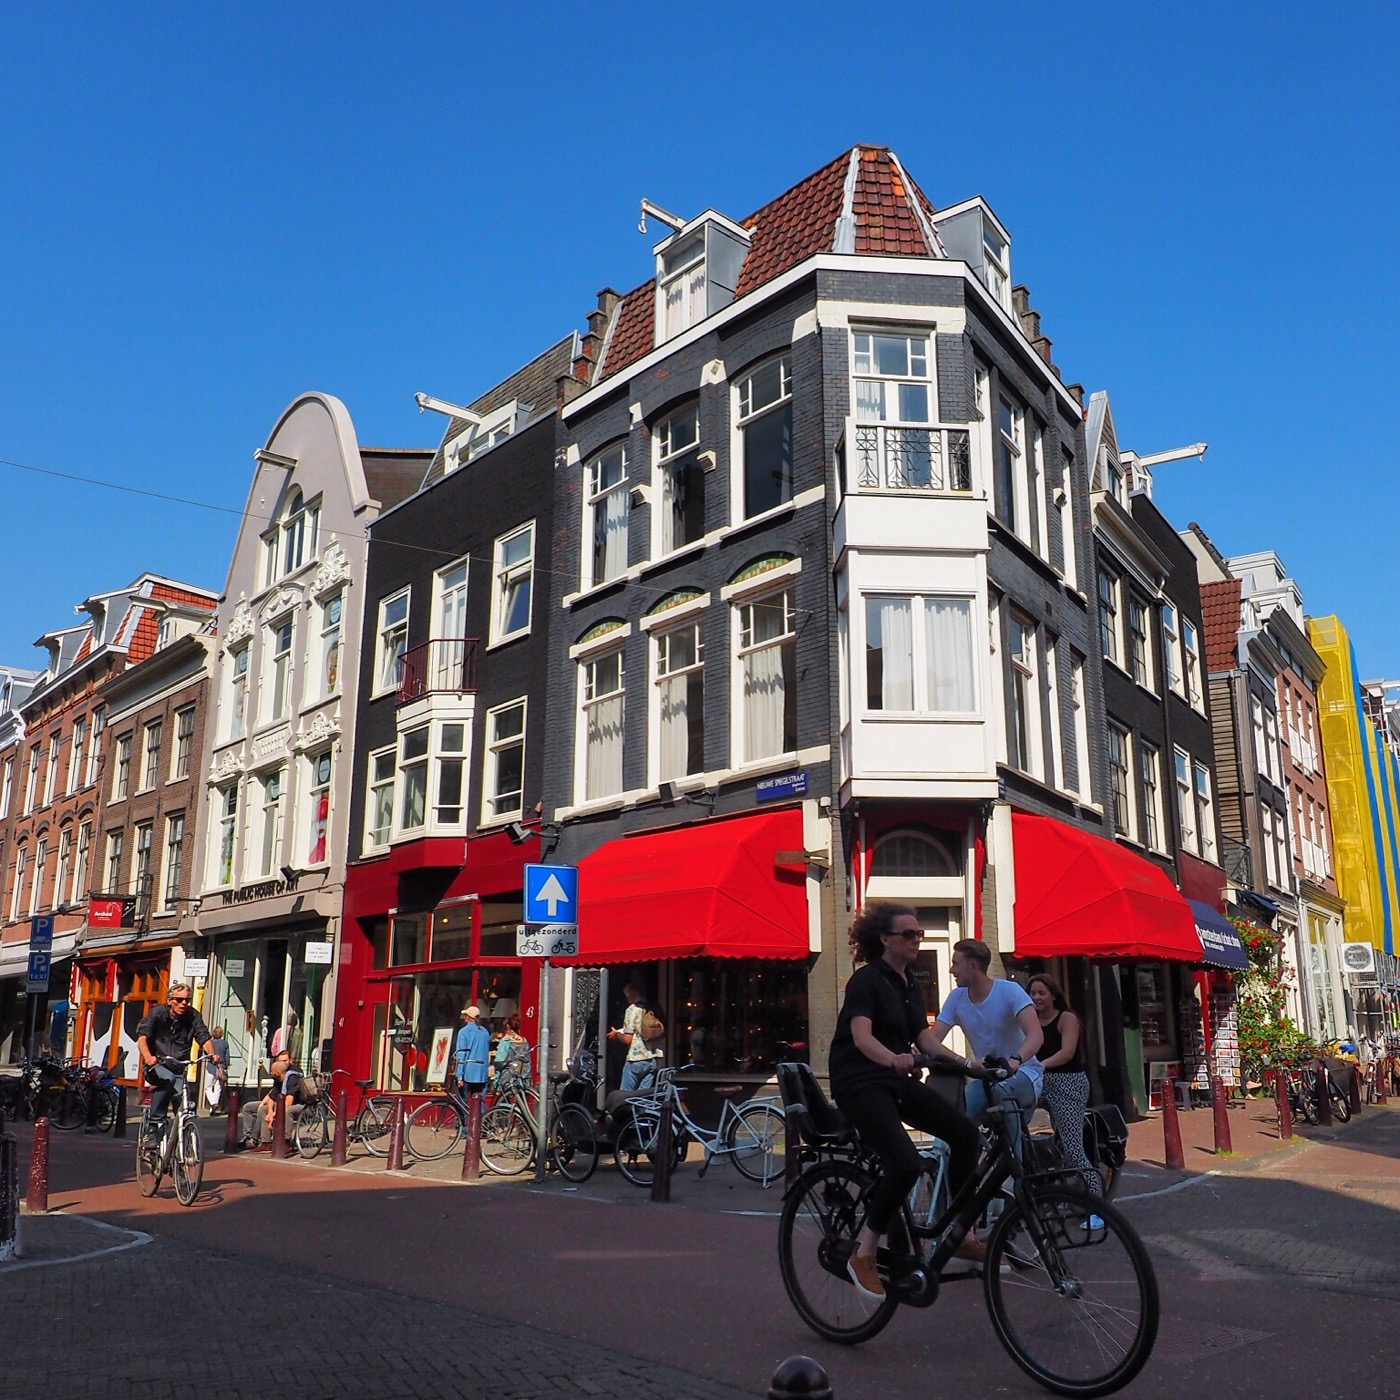 2016 荷蘭 阿姆斯特丹 旅行途中 - 一口冒險 Bitesized Adventure